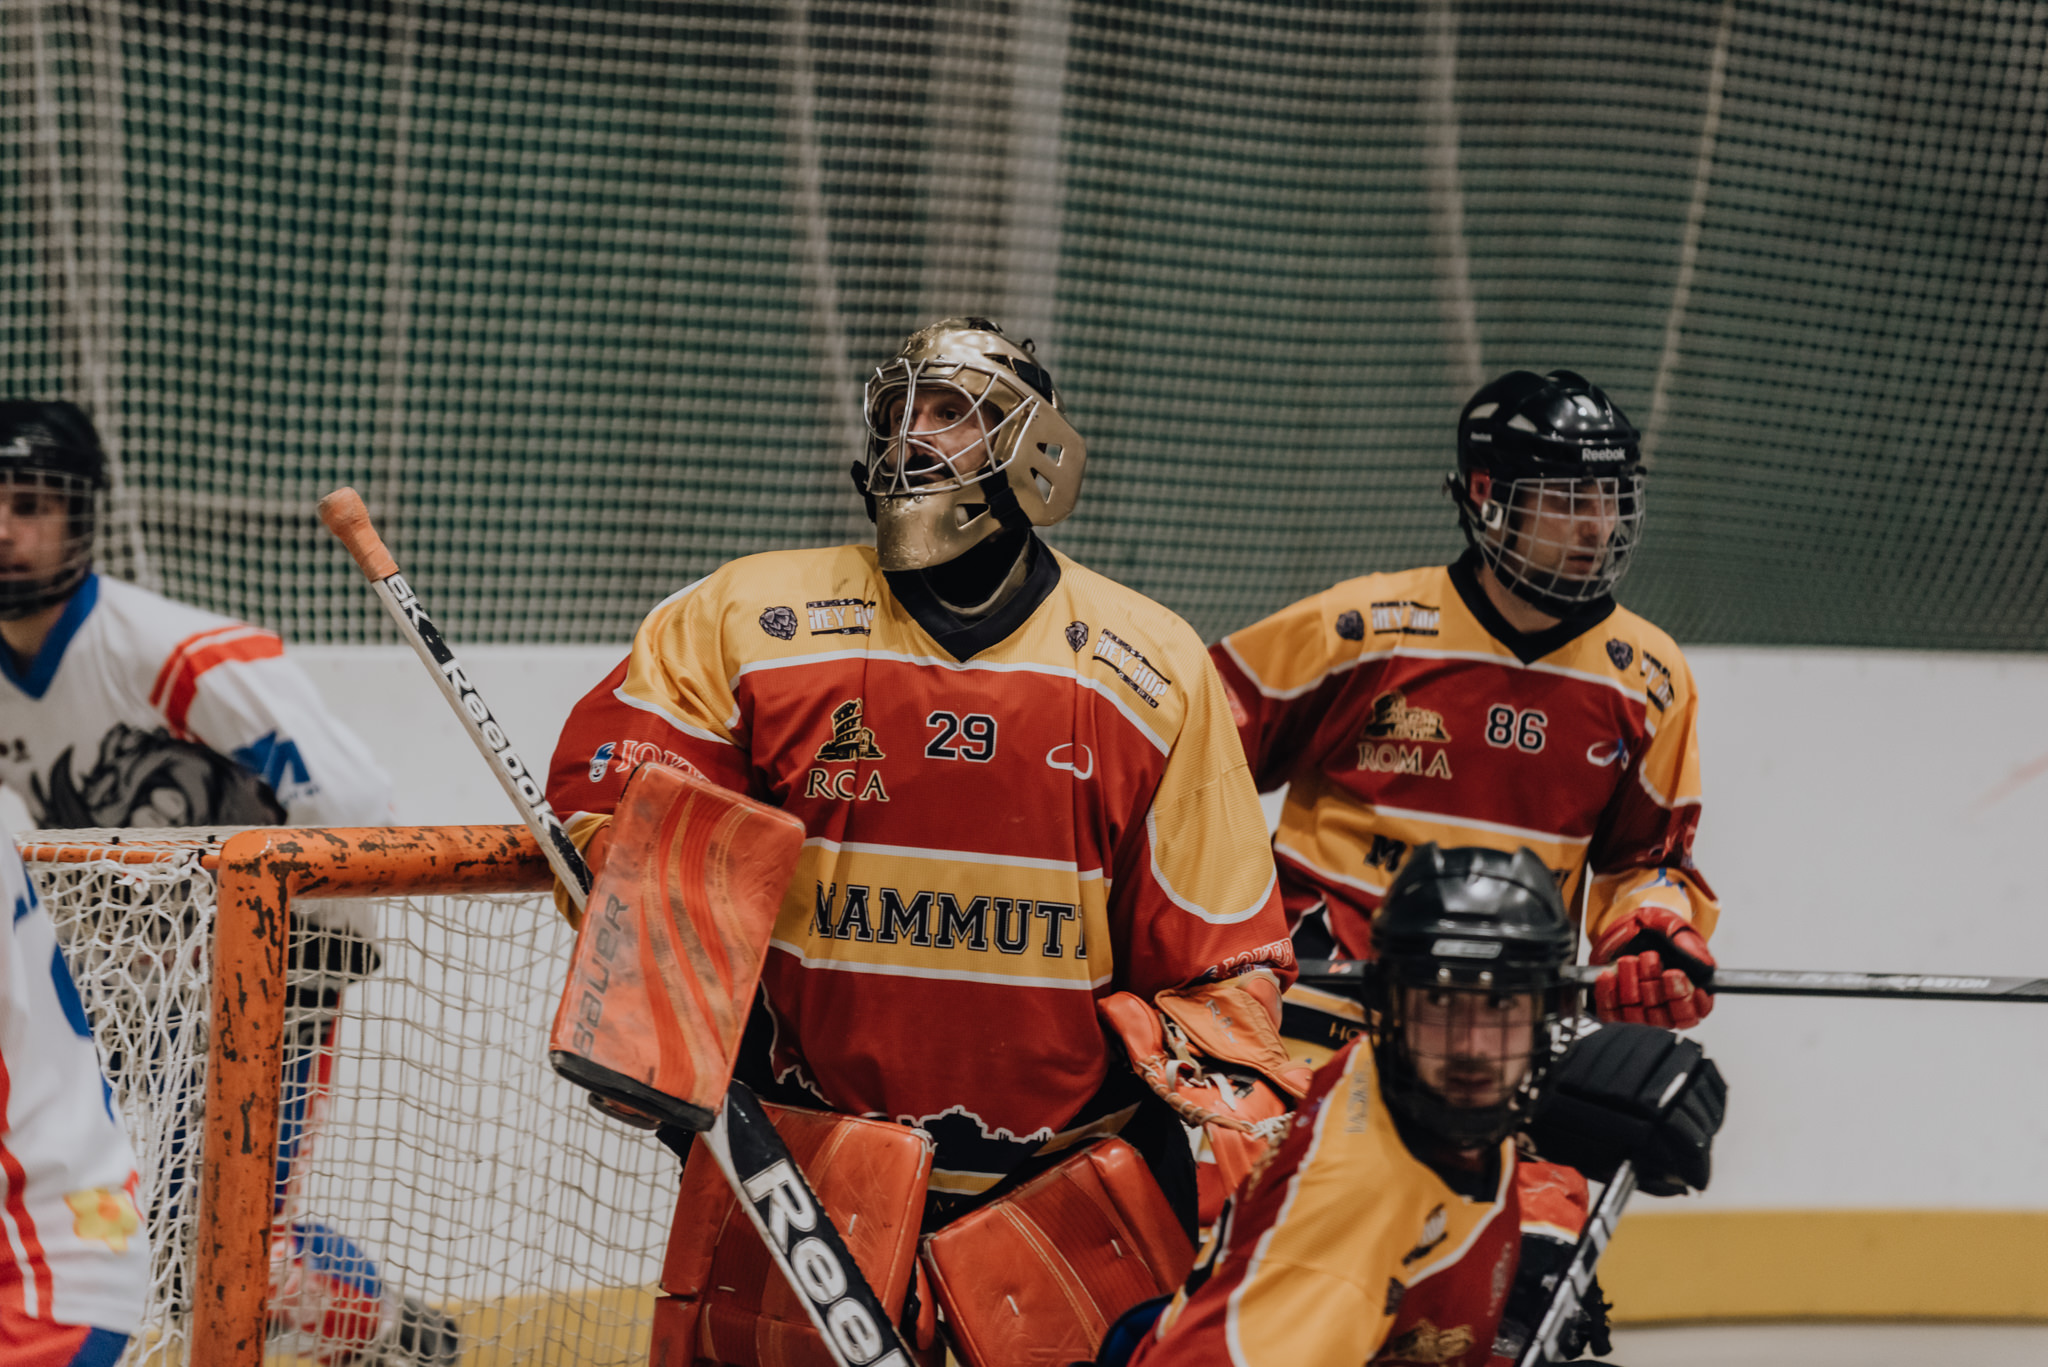 Hockey Mammuth, hockey e pattinaggio a roma, Mammuth Roma, Mammuth hockey roma, SPV Viareggio, sports photo, FISR, inline hockey, Rita Foldi photo